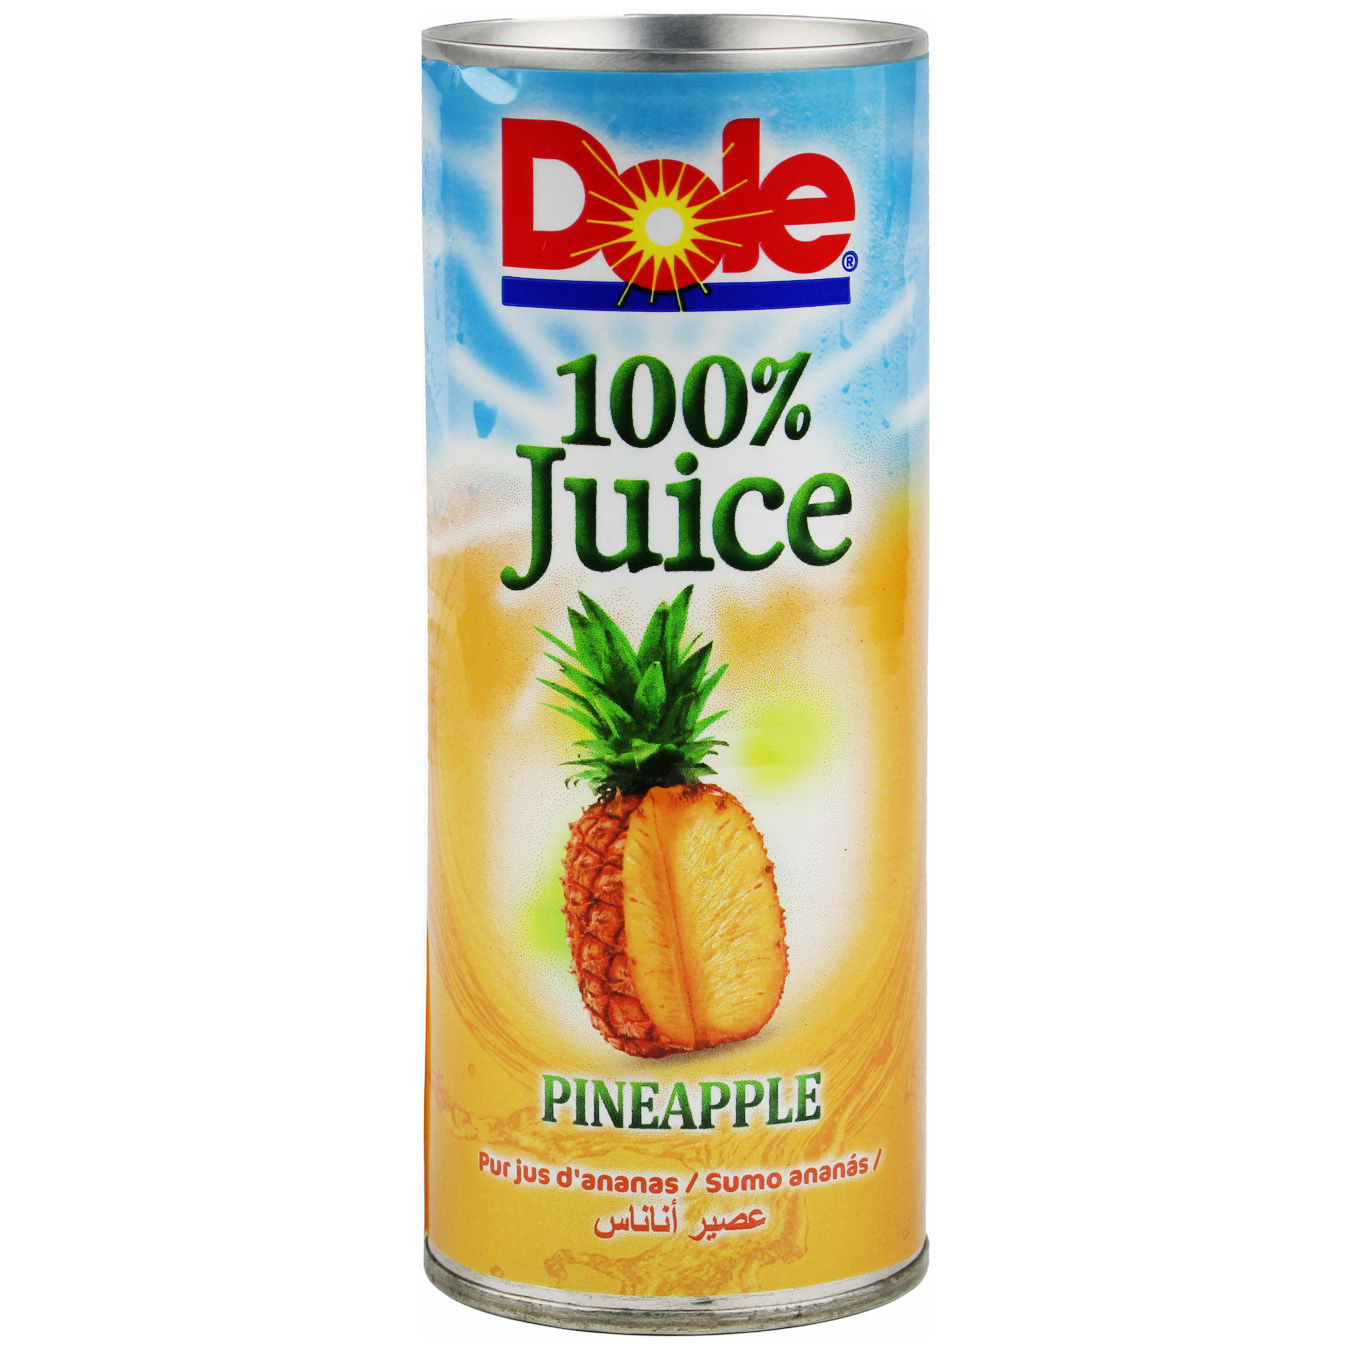 Dole Pineapple Juice 0,25l